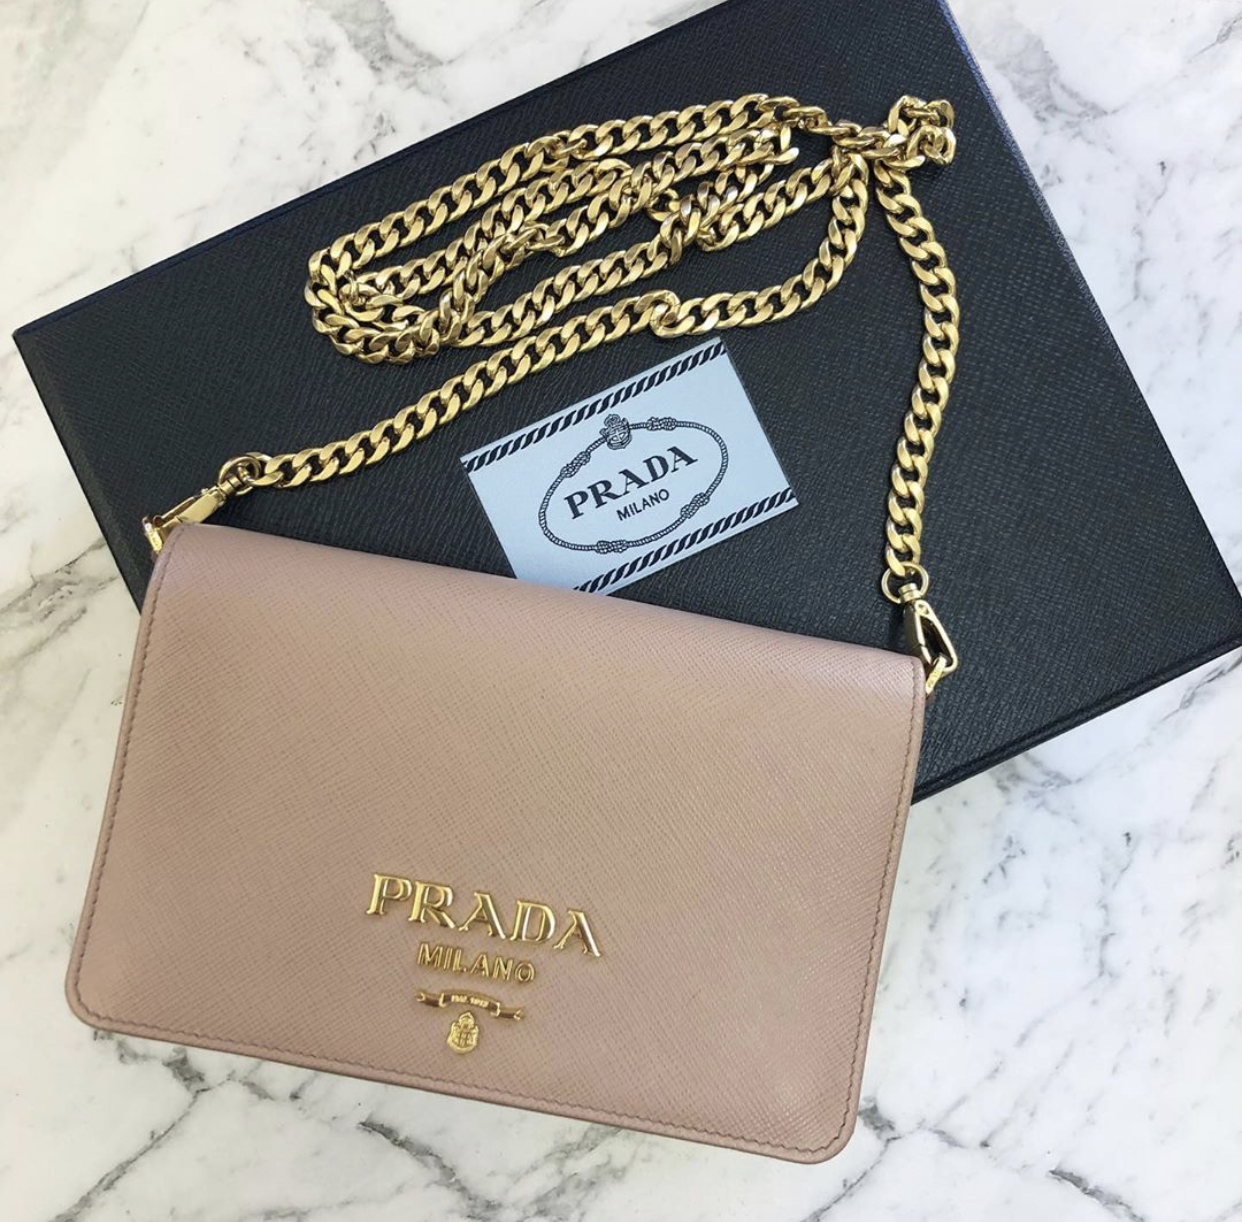 PRADA Lux Wallet Chain Bag - Dark Beige - Adorn Collection